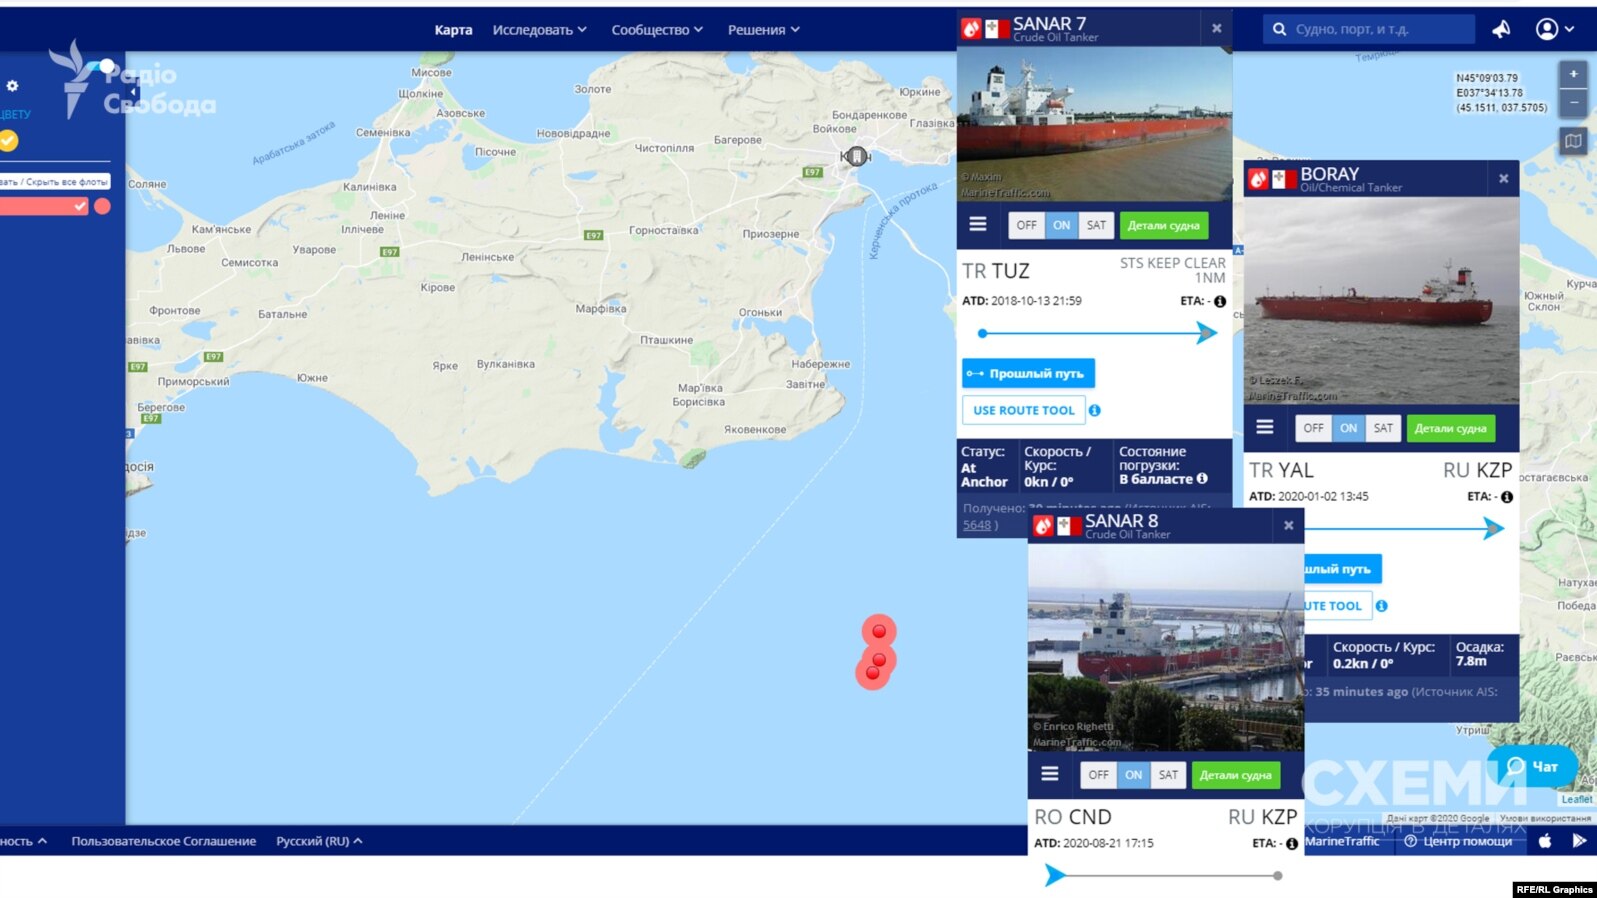 За даними Marine Traffic три великі танкери з мальтійськими прапорами майже непорушно стоять у нейтральних водах Чорного моря